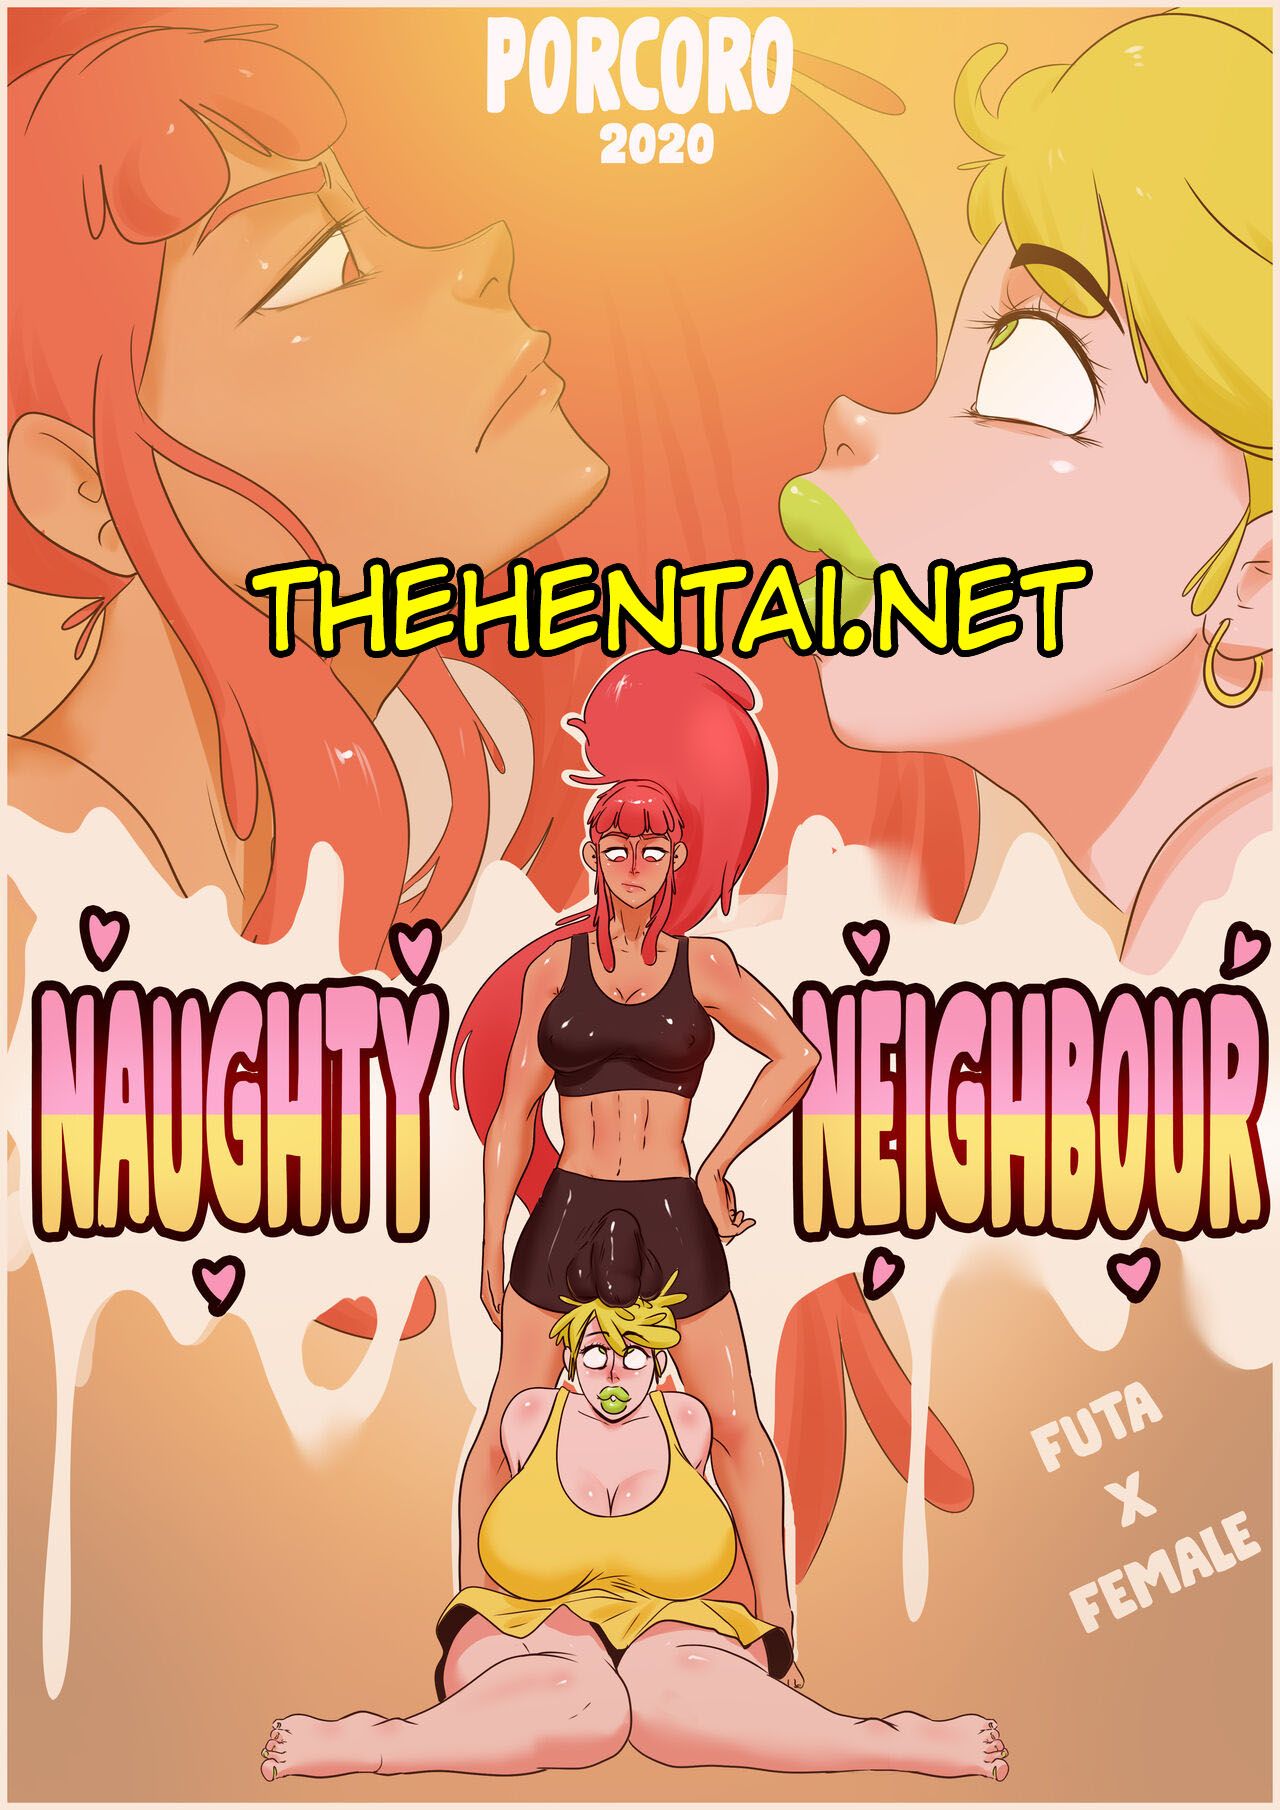 Naughty Neighbour Hentai pt-br 01